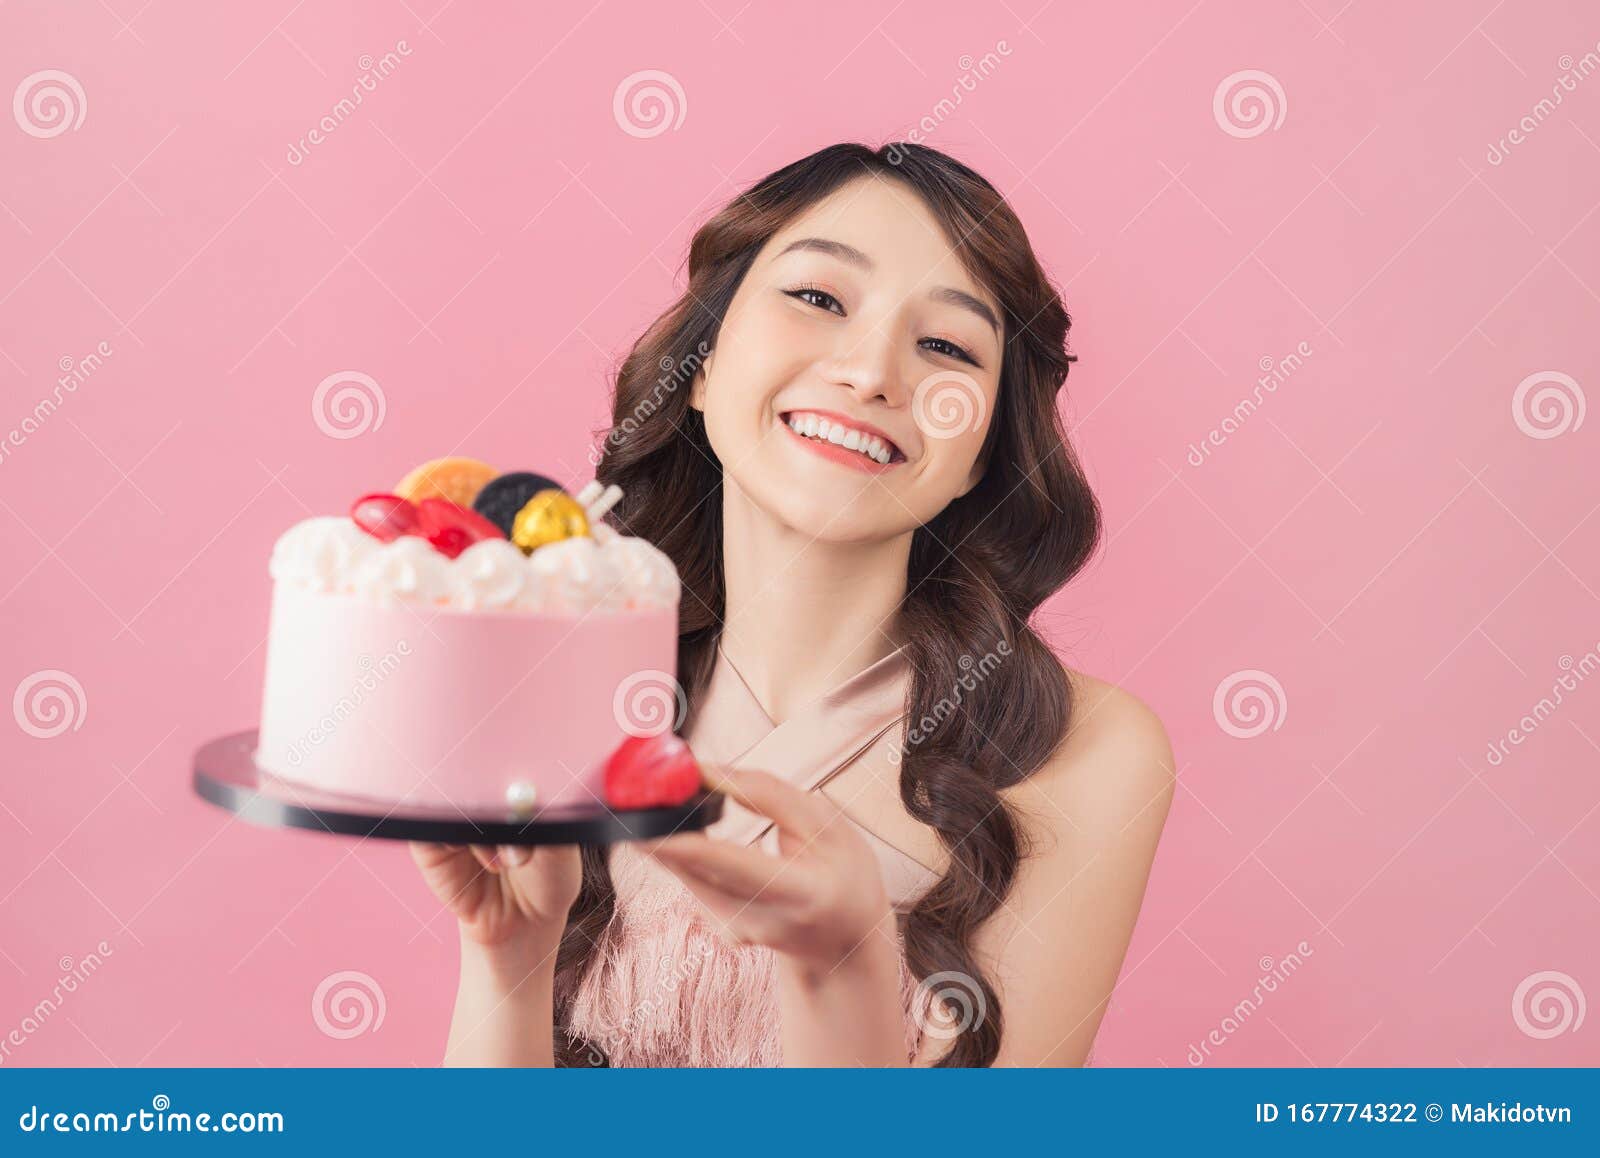 生日蛋糕女孩 库存图片. 图片 包括有 背包, 青少年, 愉快, 食物, 年轻, 相当, 生日, 青春期前 - 7317309